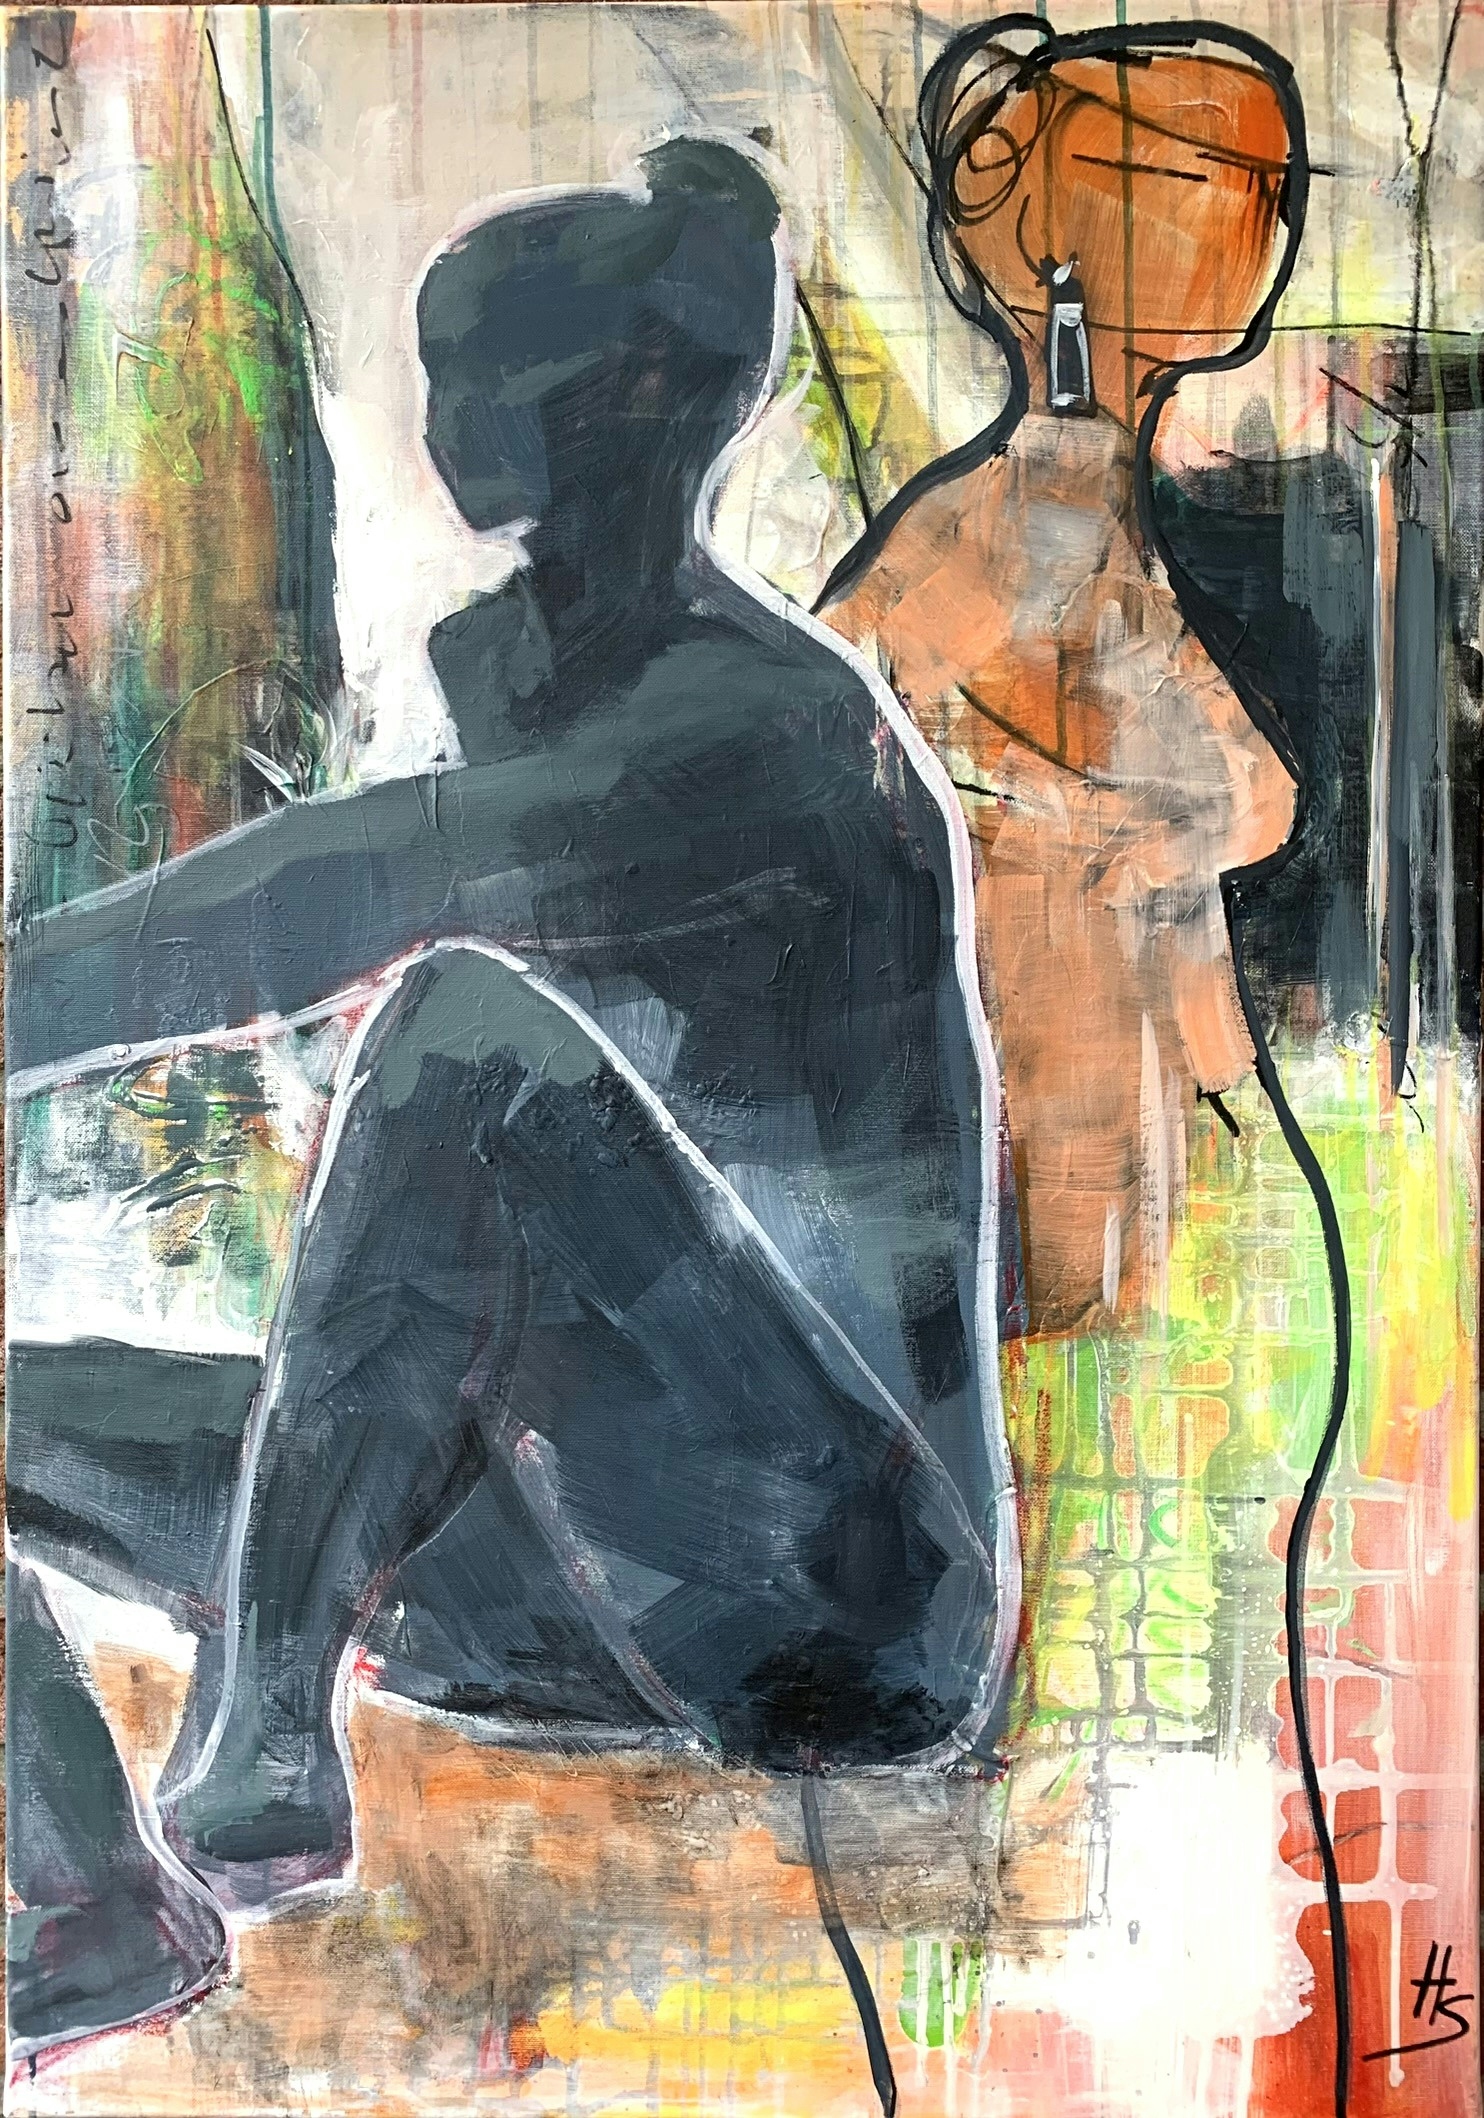 Nude artwork by Heike Schümann depicts two women